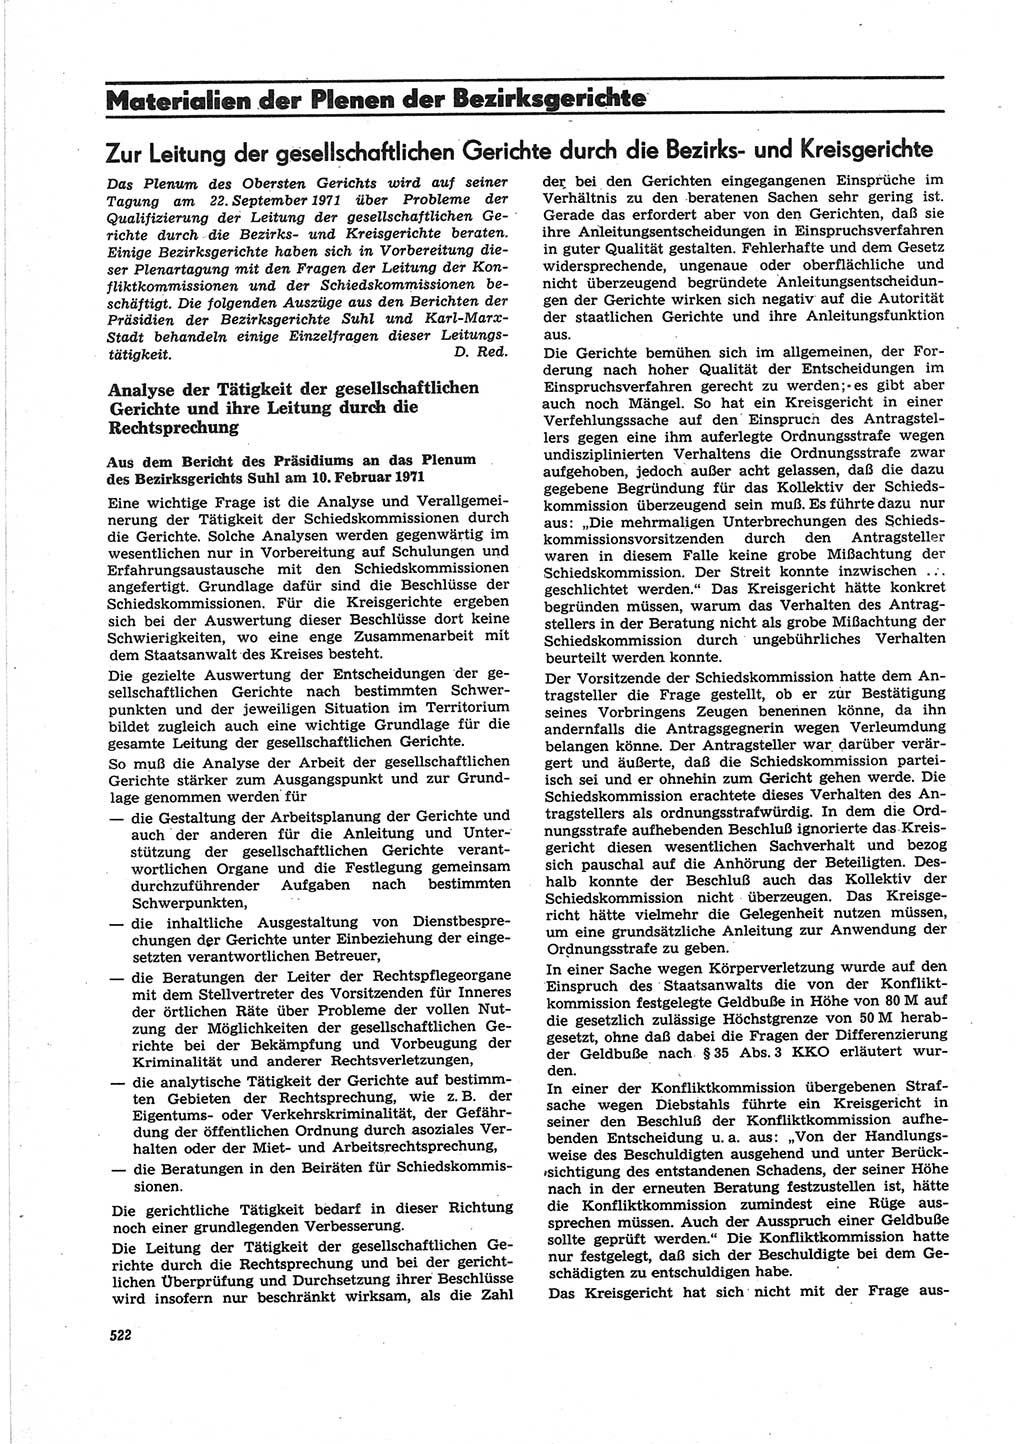 Neue Justiz (NJ), Zeitschrift für Recht und Rechtswissenschaft [Deutsche Demokratische Republik (DDR)], 25. Jahrgang 1971, Seite 522 (NJ DDR 1971, S. 522)